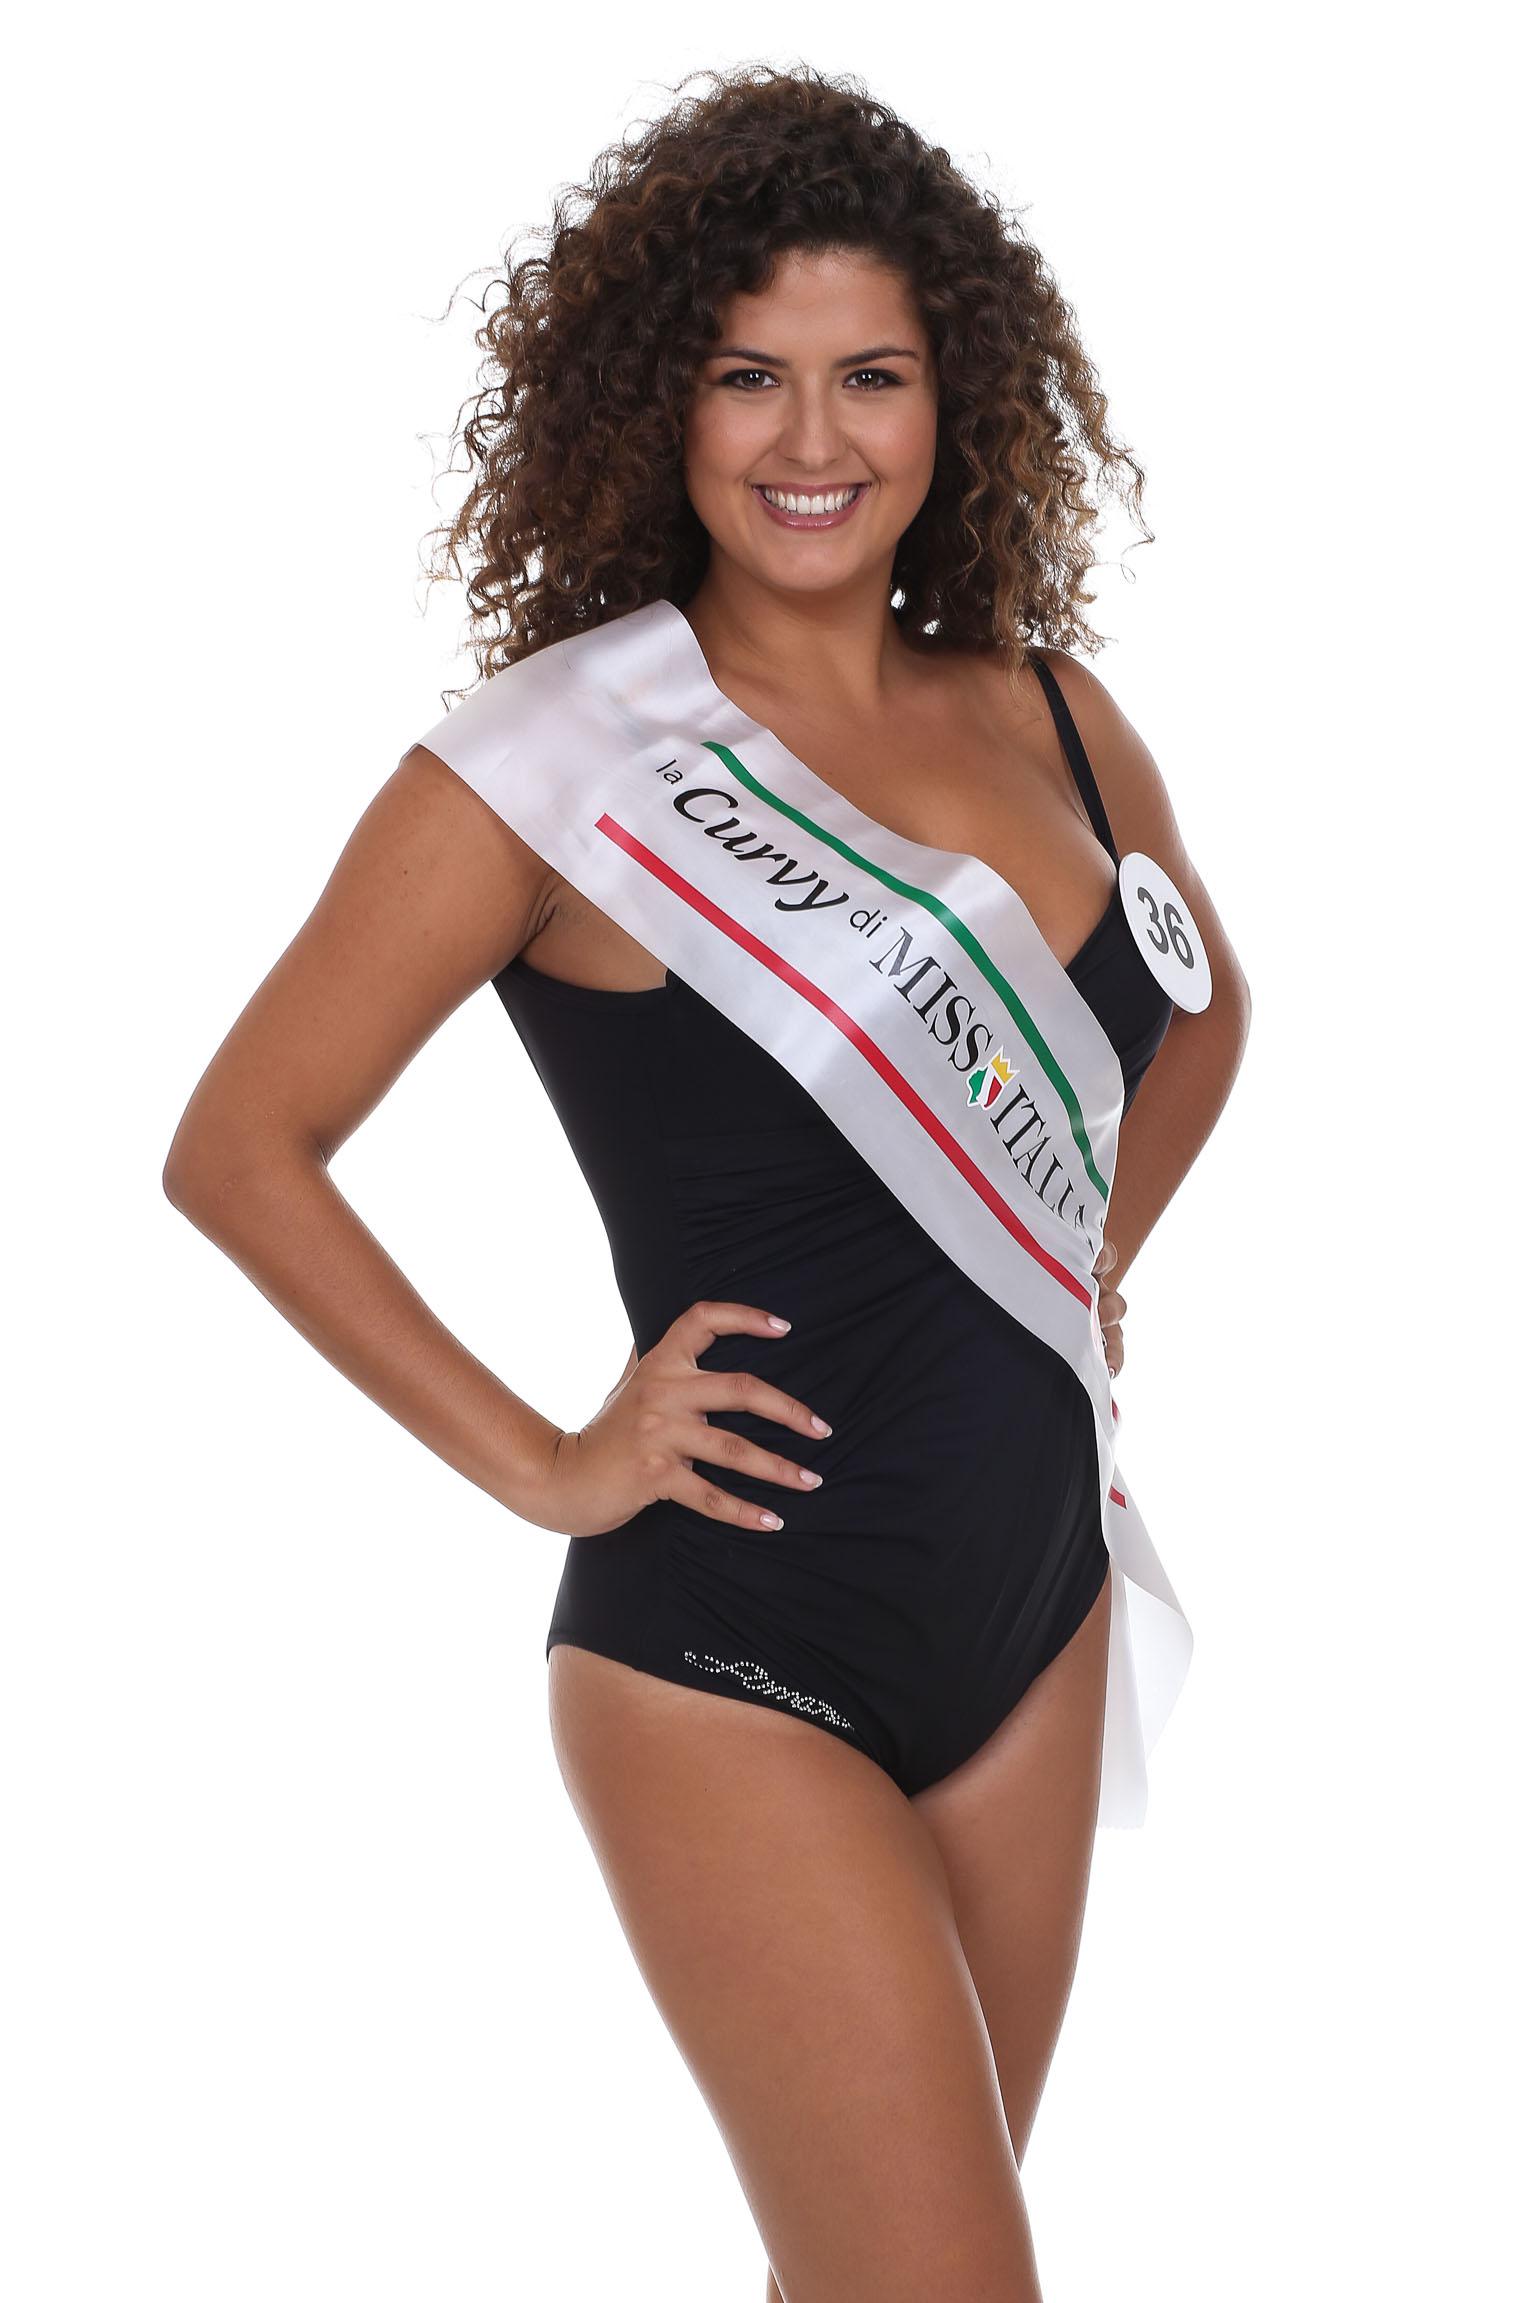 36. La Curvy di Miss Italia Keyrà Liguria